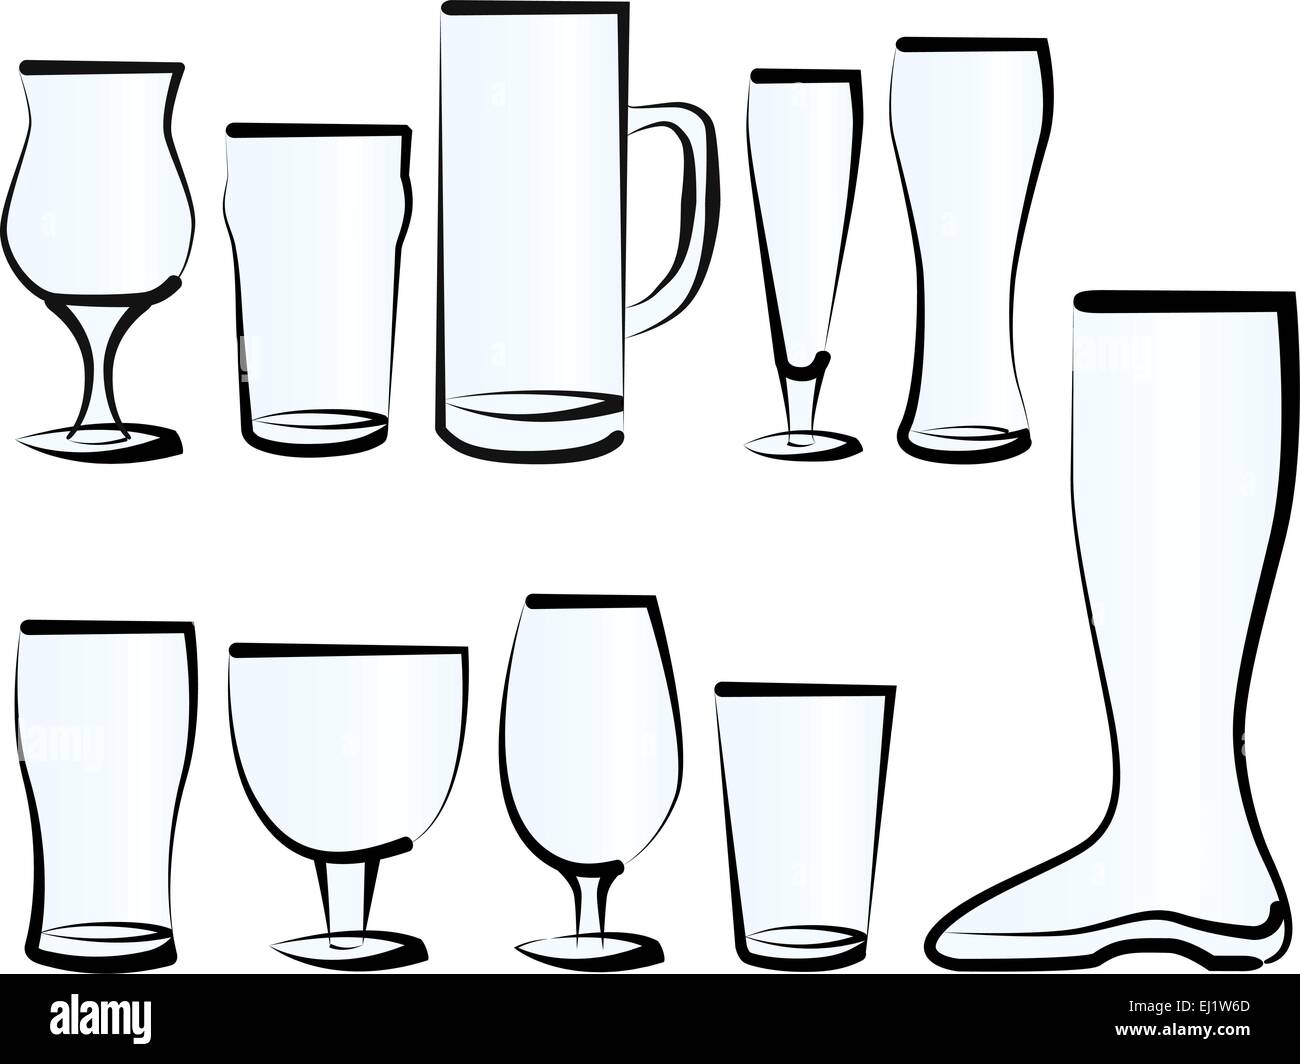 Illustration vecteur ensemble de verres de bière, que vous pouvez trouver dans un bar, un pub ou un restaurant. Illustration de Vecteur